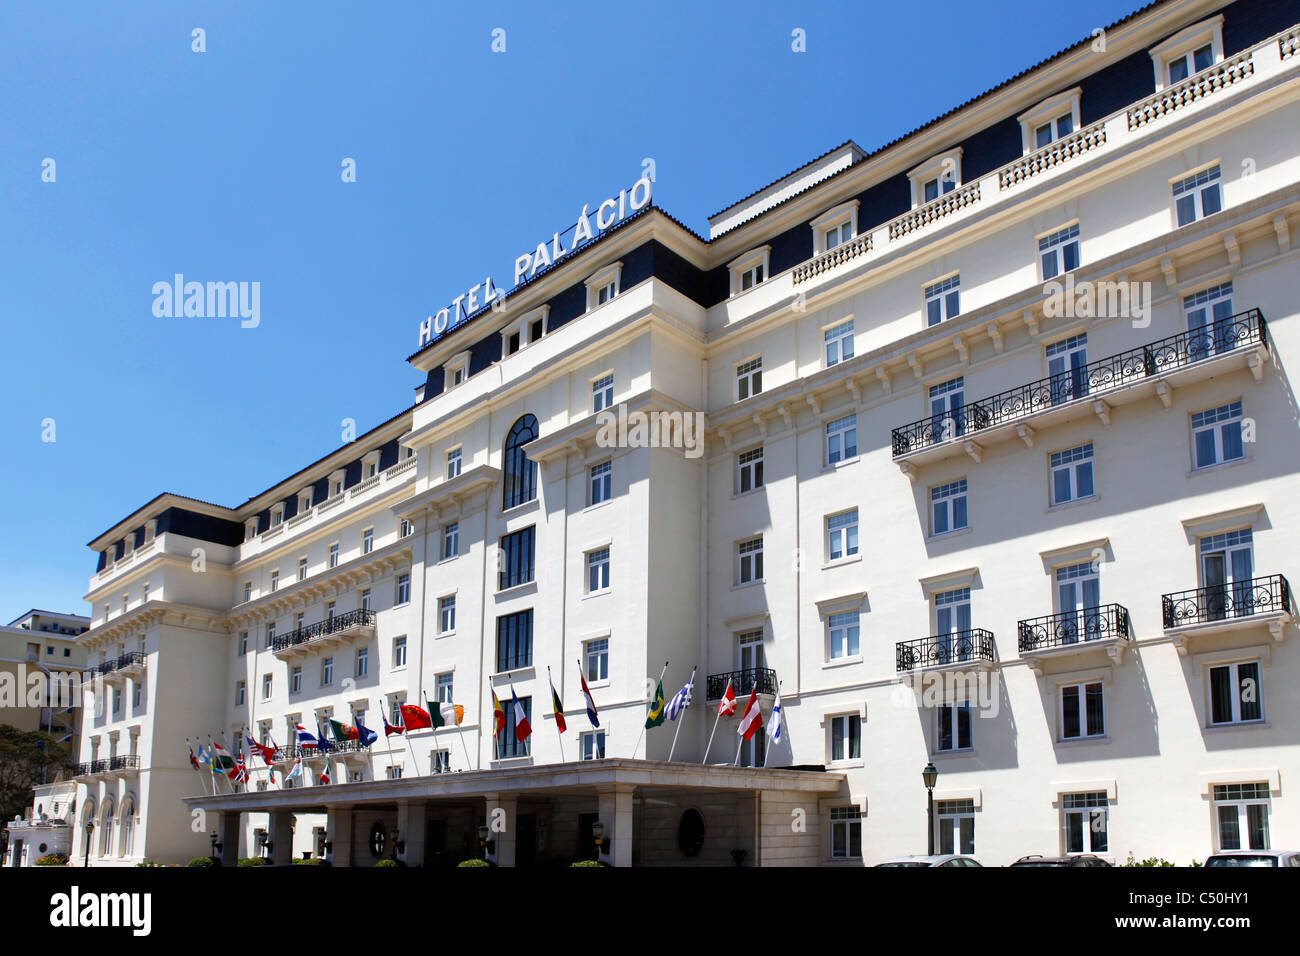 The Hotel Palacio in Estoril, Portugal. Stock Photo